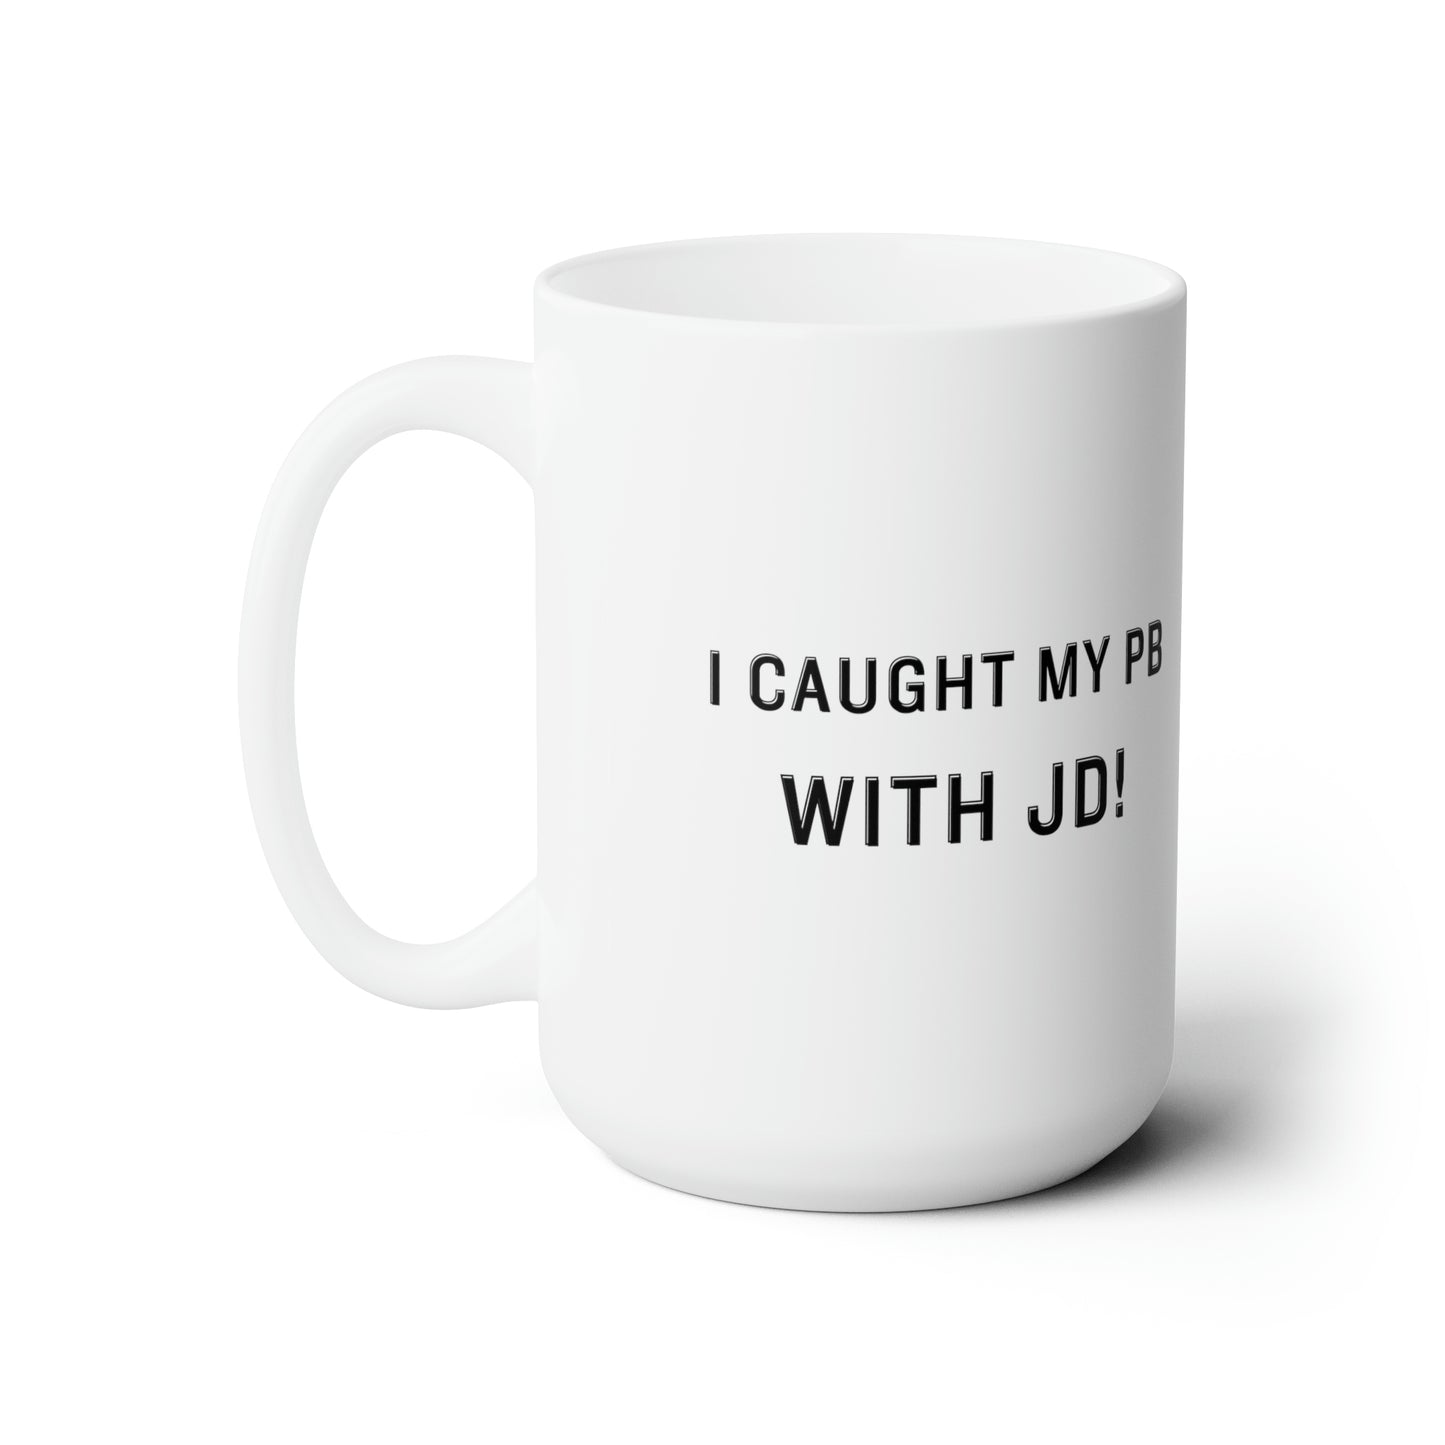 Caught My PB with JD Ceramic Mug